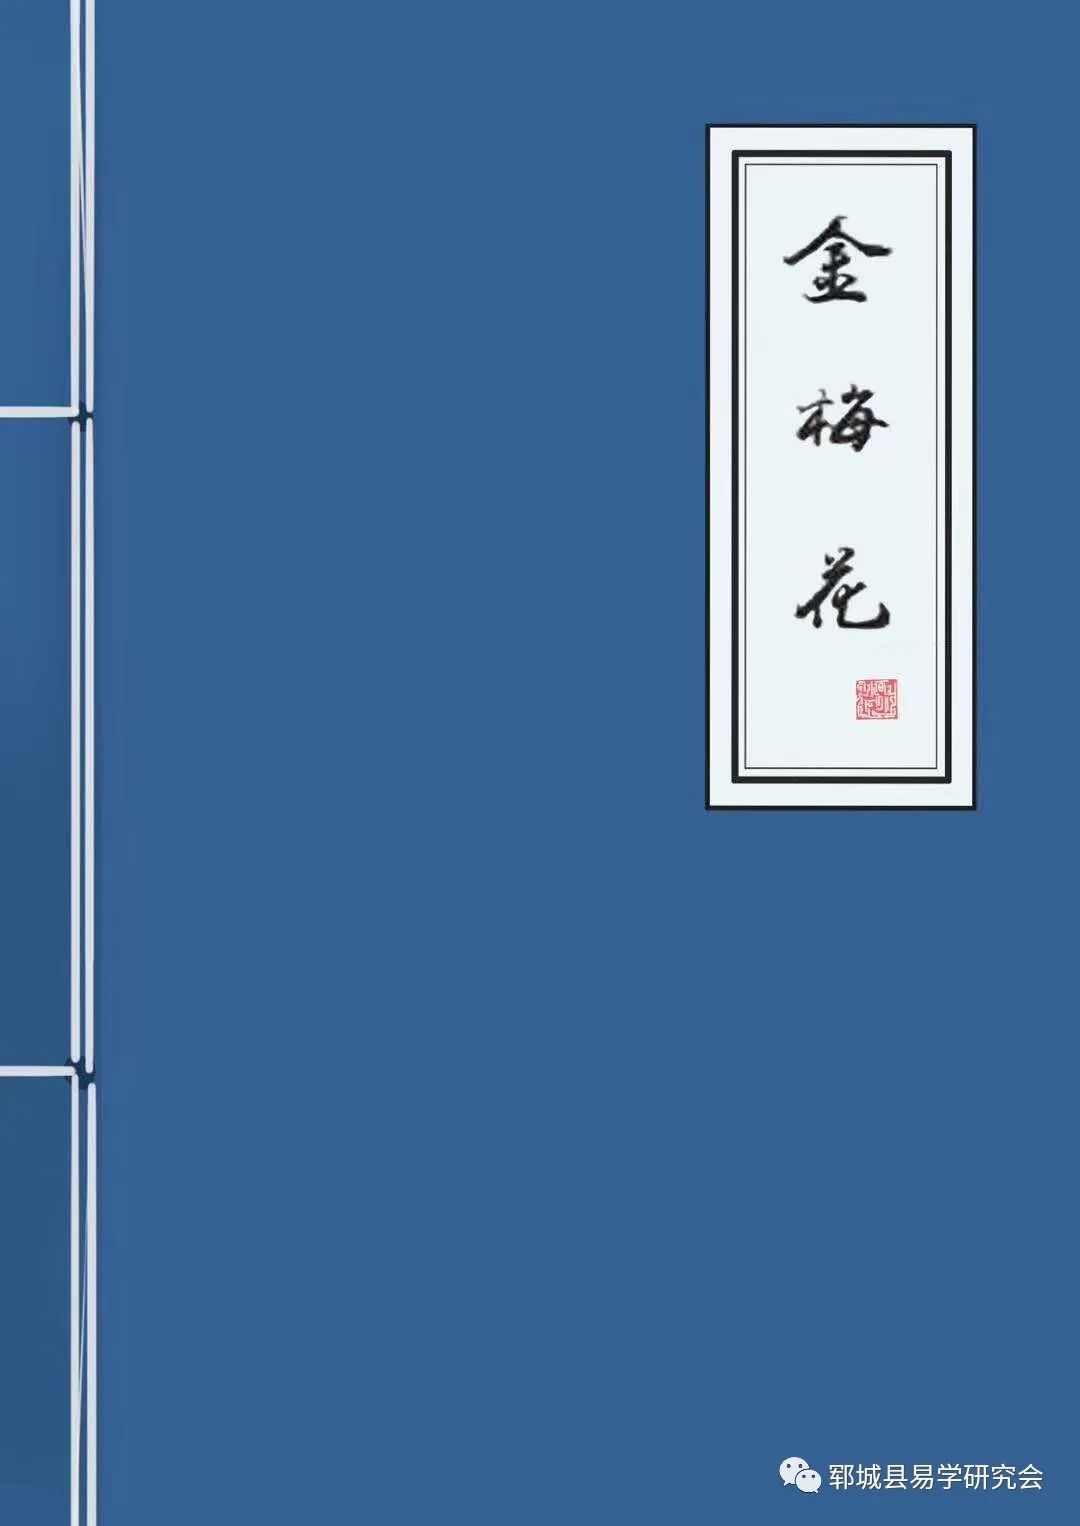 郓城县易学研究会官方网站金梅花的起卦方法，共分为四种